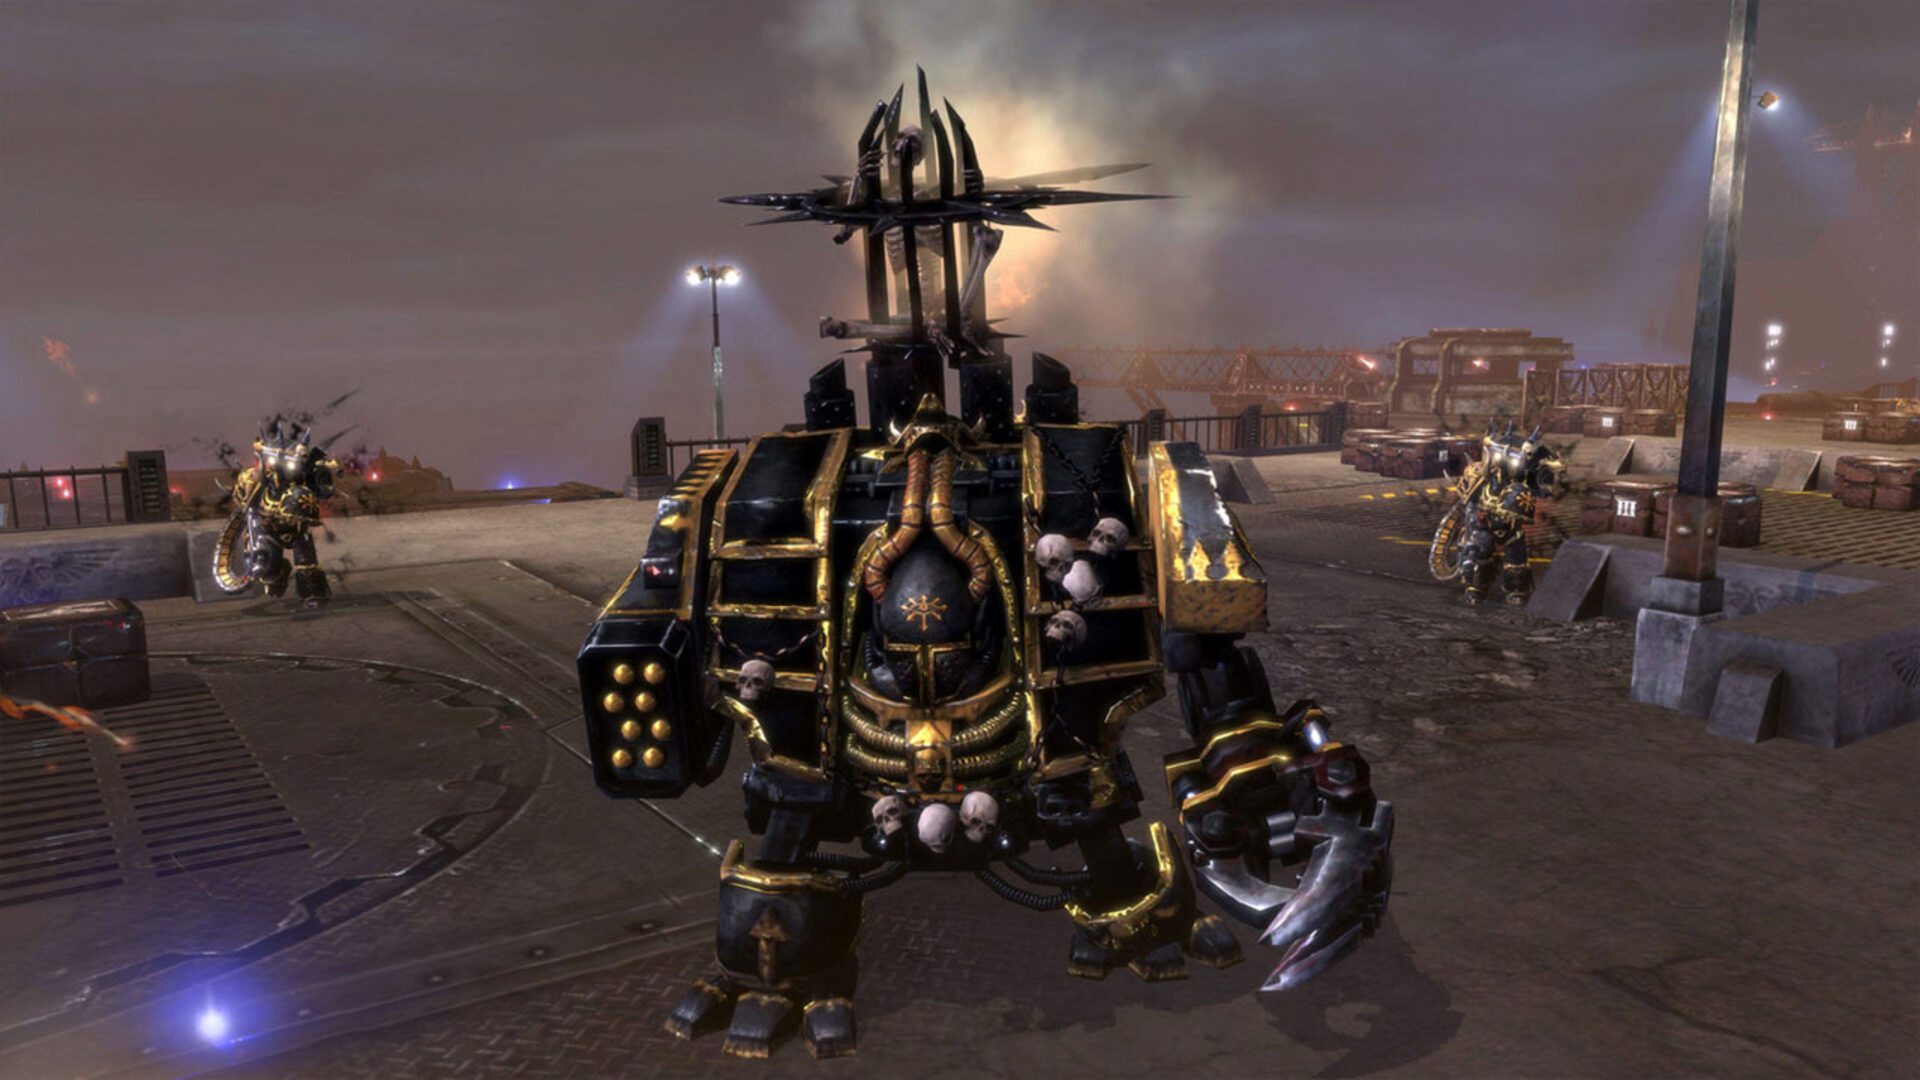 Warhammer 40,000: Dawn of War II - Grand Master Collection on Steam